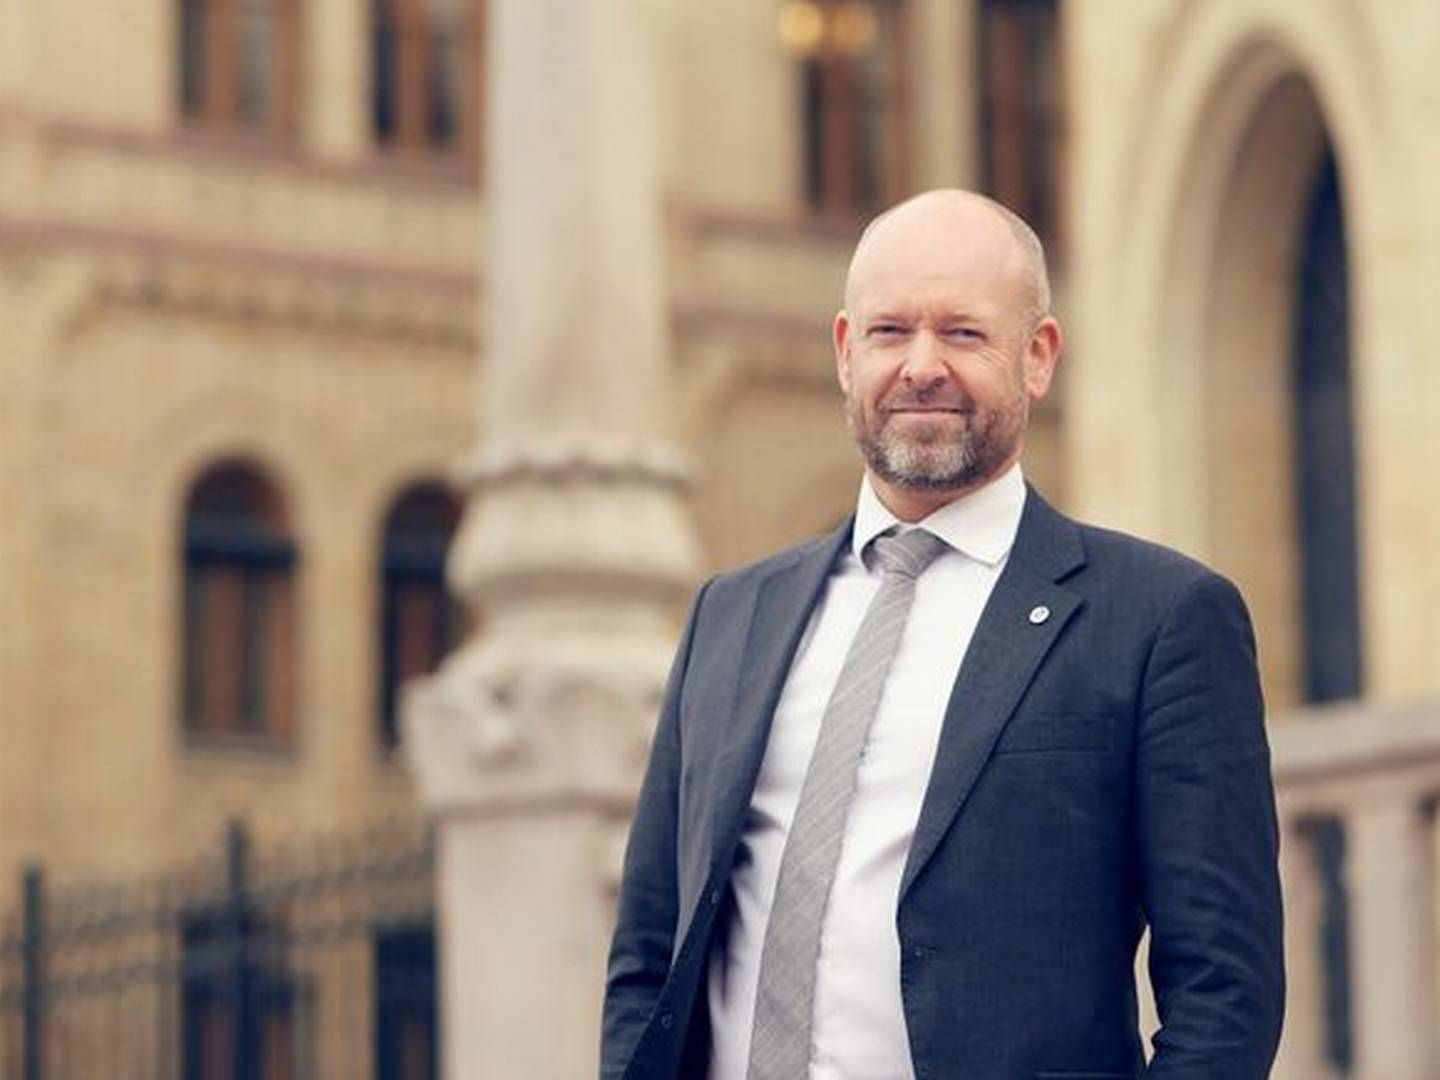 FORNØYD: Administrerende direktør Jørund Rytman er fornøyd med en god rapport fra SMBs juridiske utvalg | Foto: Susanne A. Finnes, SMB Norge